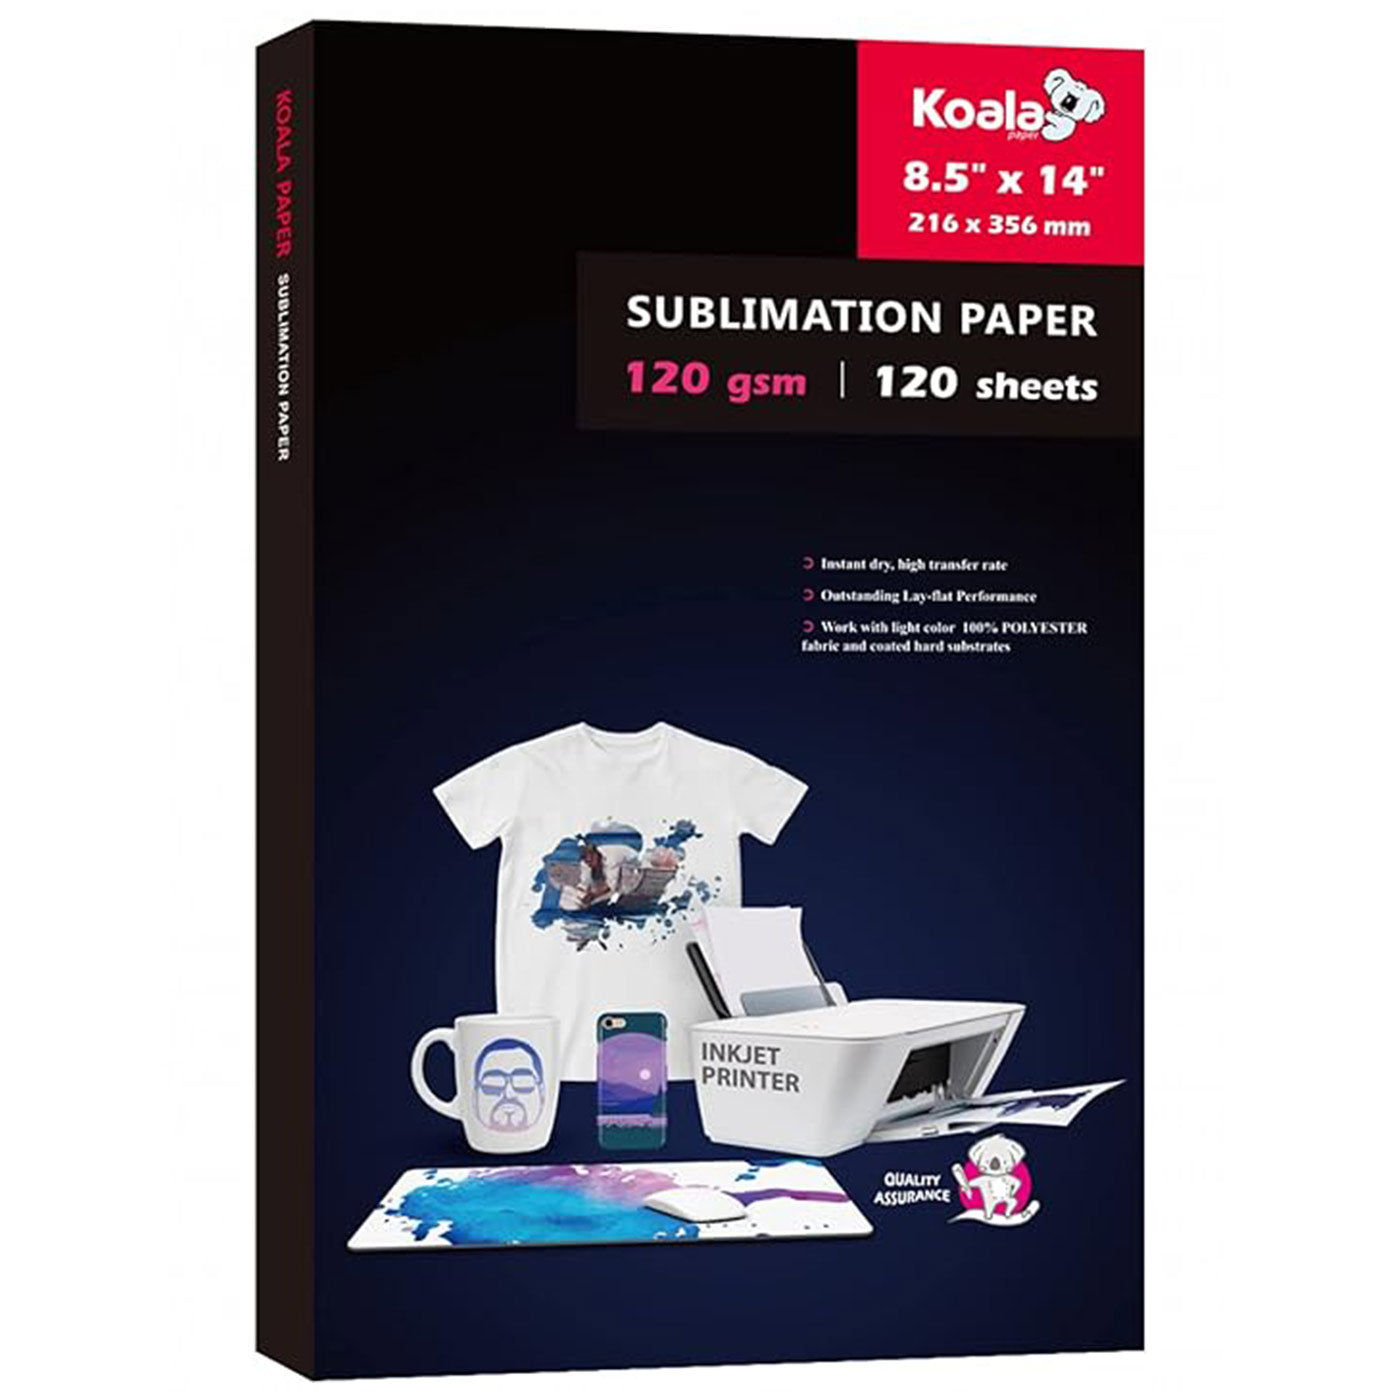 KOALA Sublimation Transfer Paper for Inkjet Printer 120gsm 120 Sheets